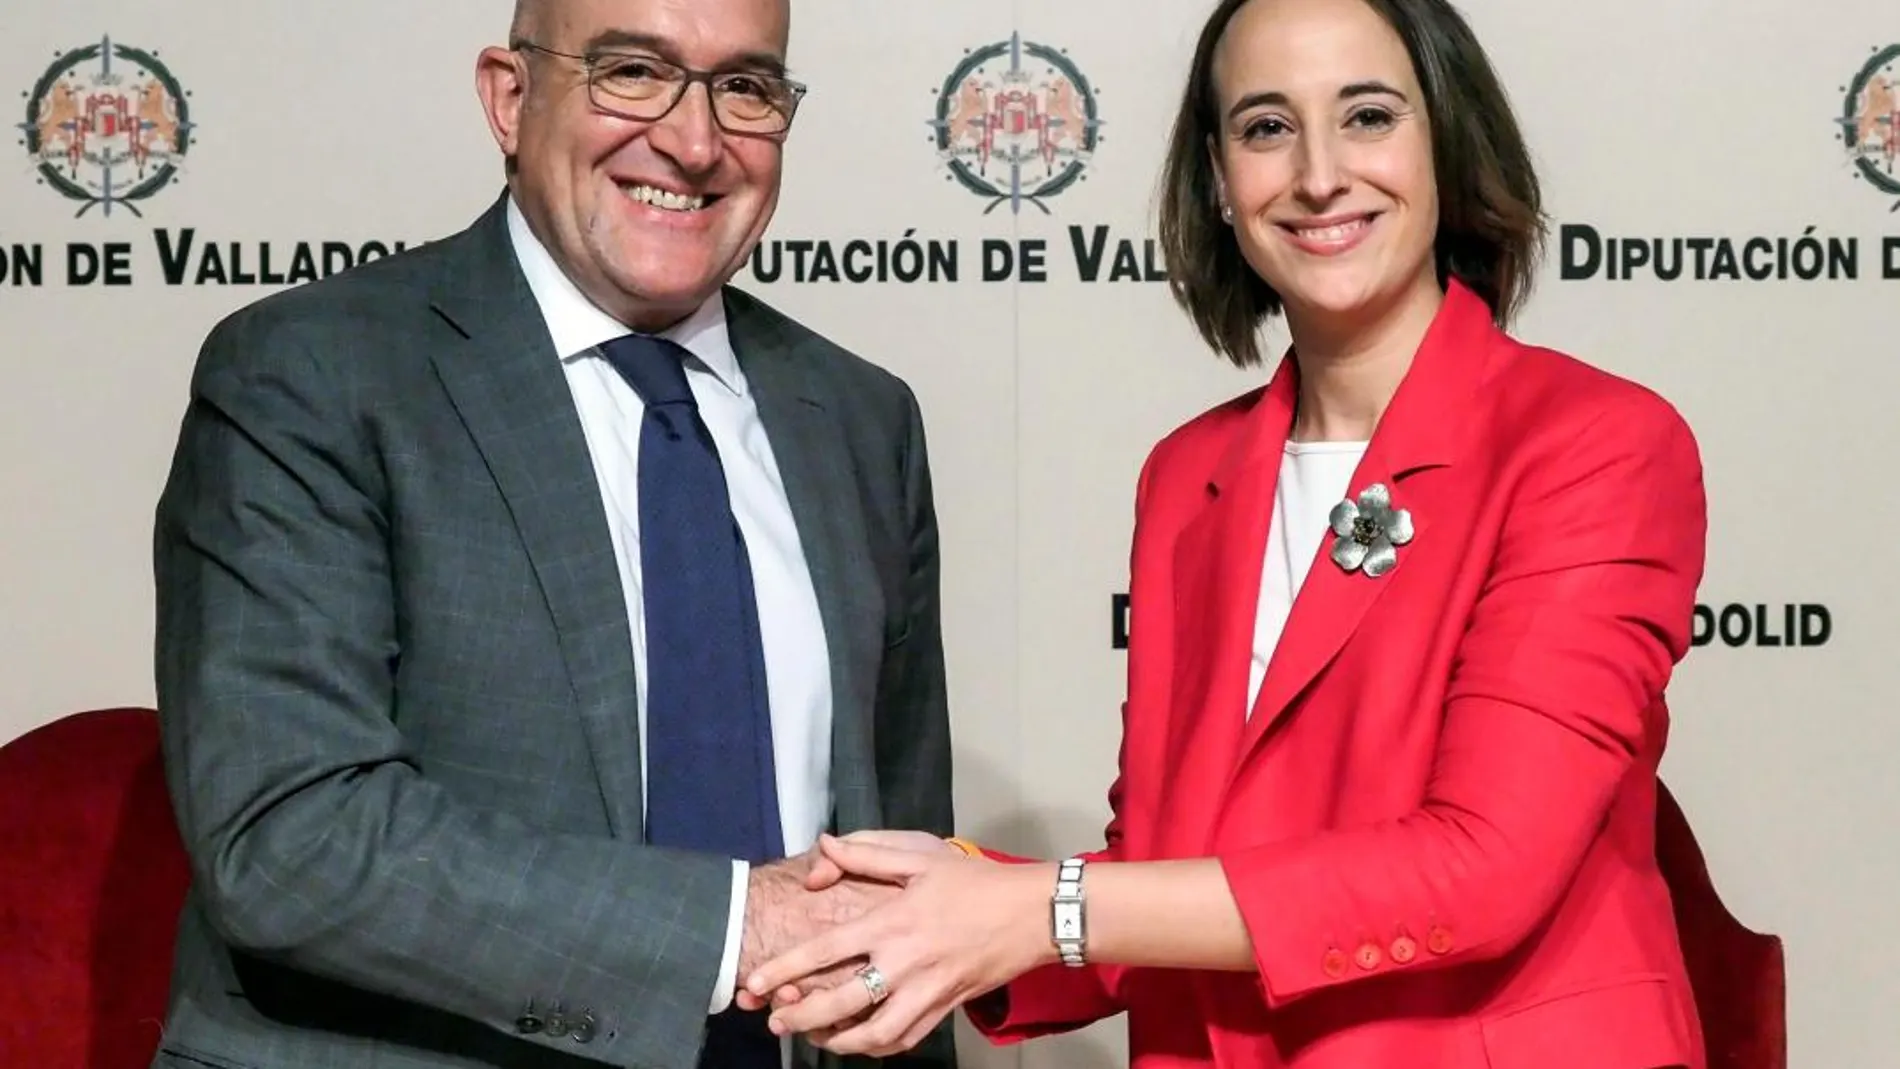 El presidente de la Diputación de Valladolid, Jesús Julio Carnero, y la portavoz de Ciudadanos, Pilar Vicente, sellan el acuerdo